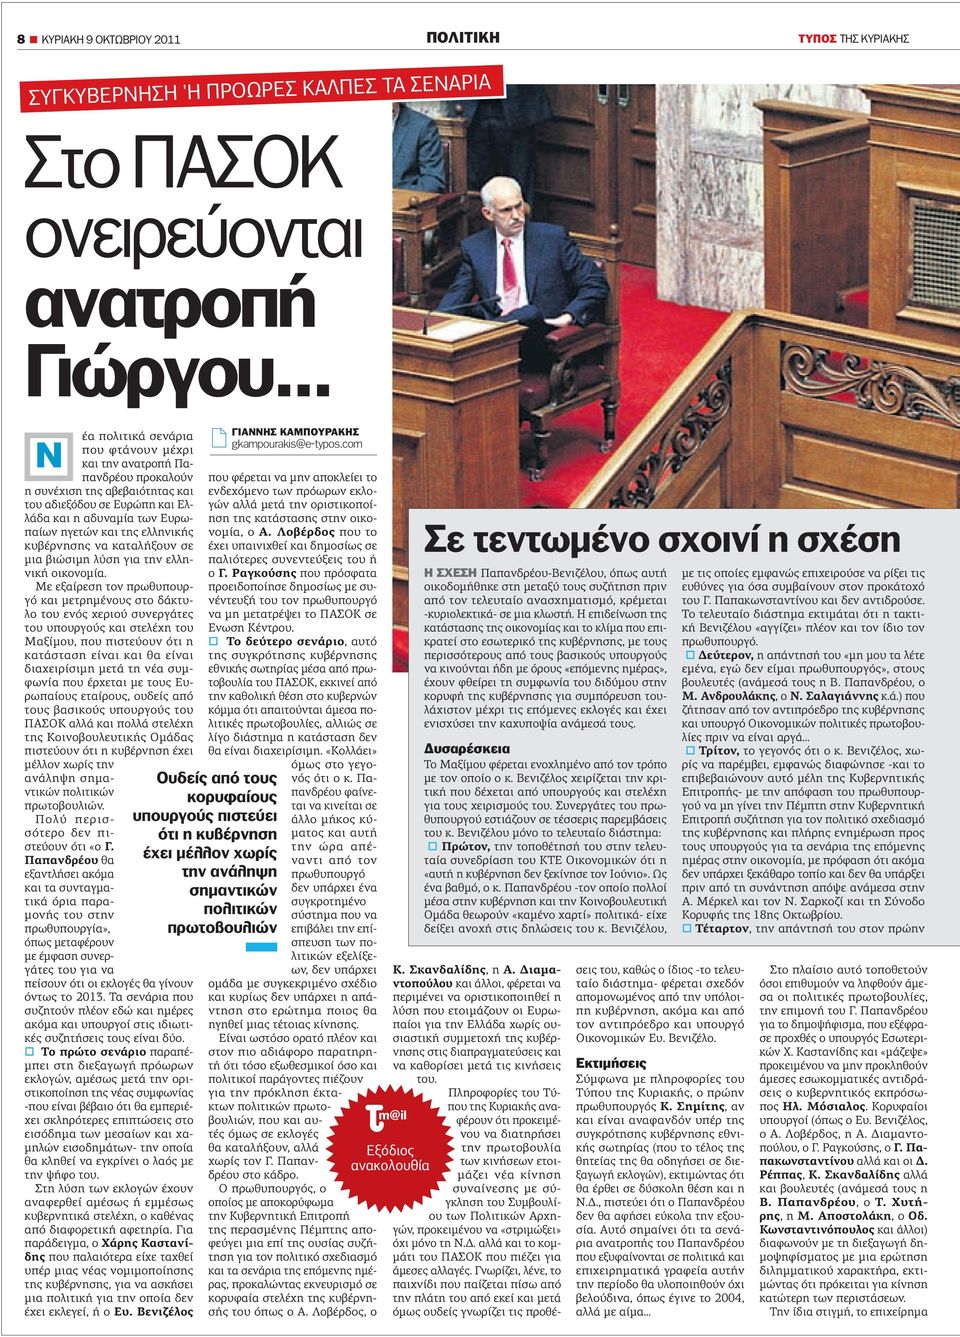 ελληνικής κυβέρνησης να καταλήξουν σε µια βιώσιµη λύση για την ελληνική οικονοµία.